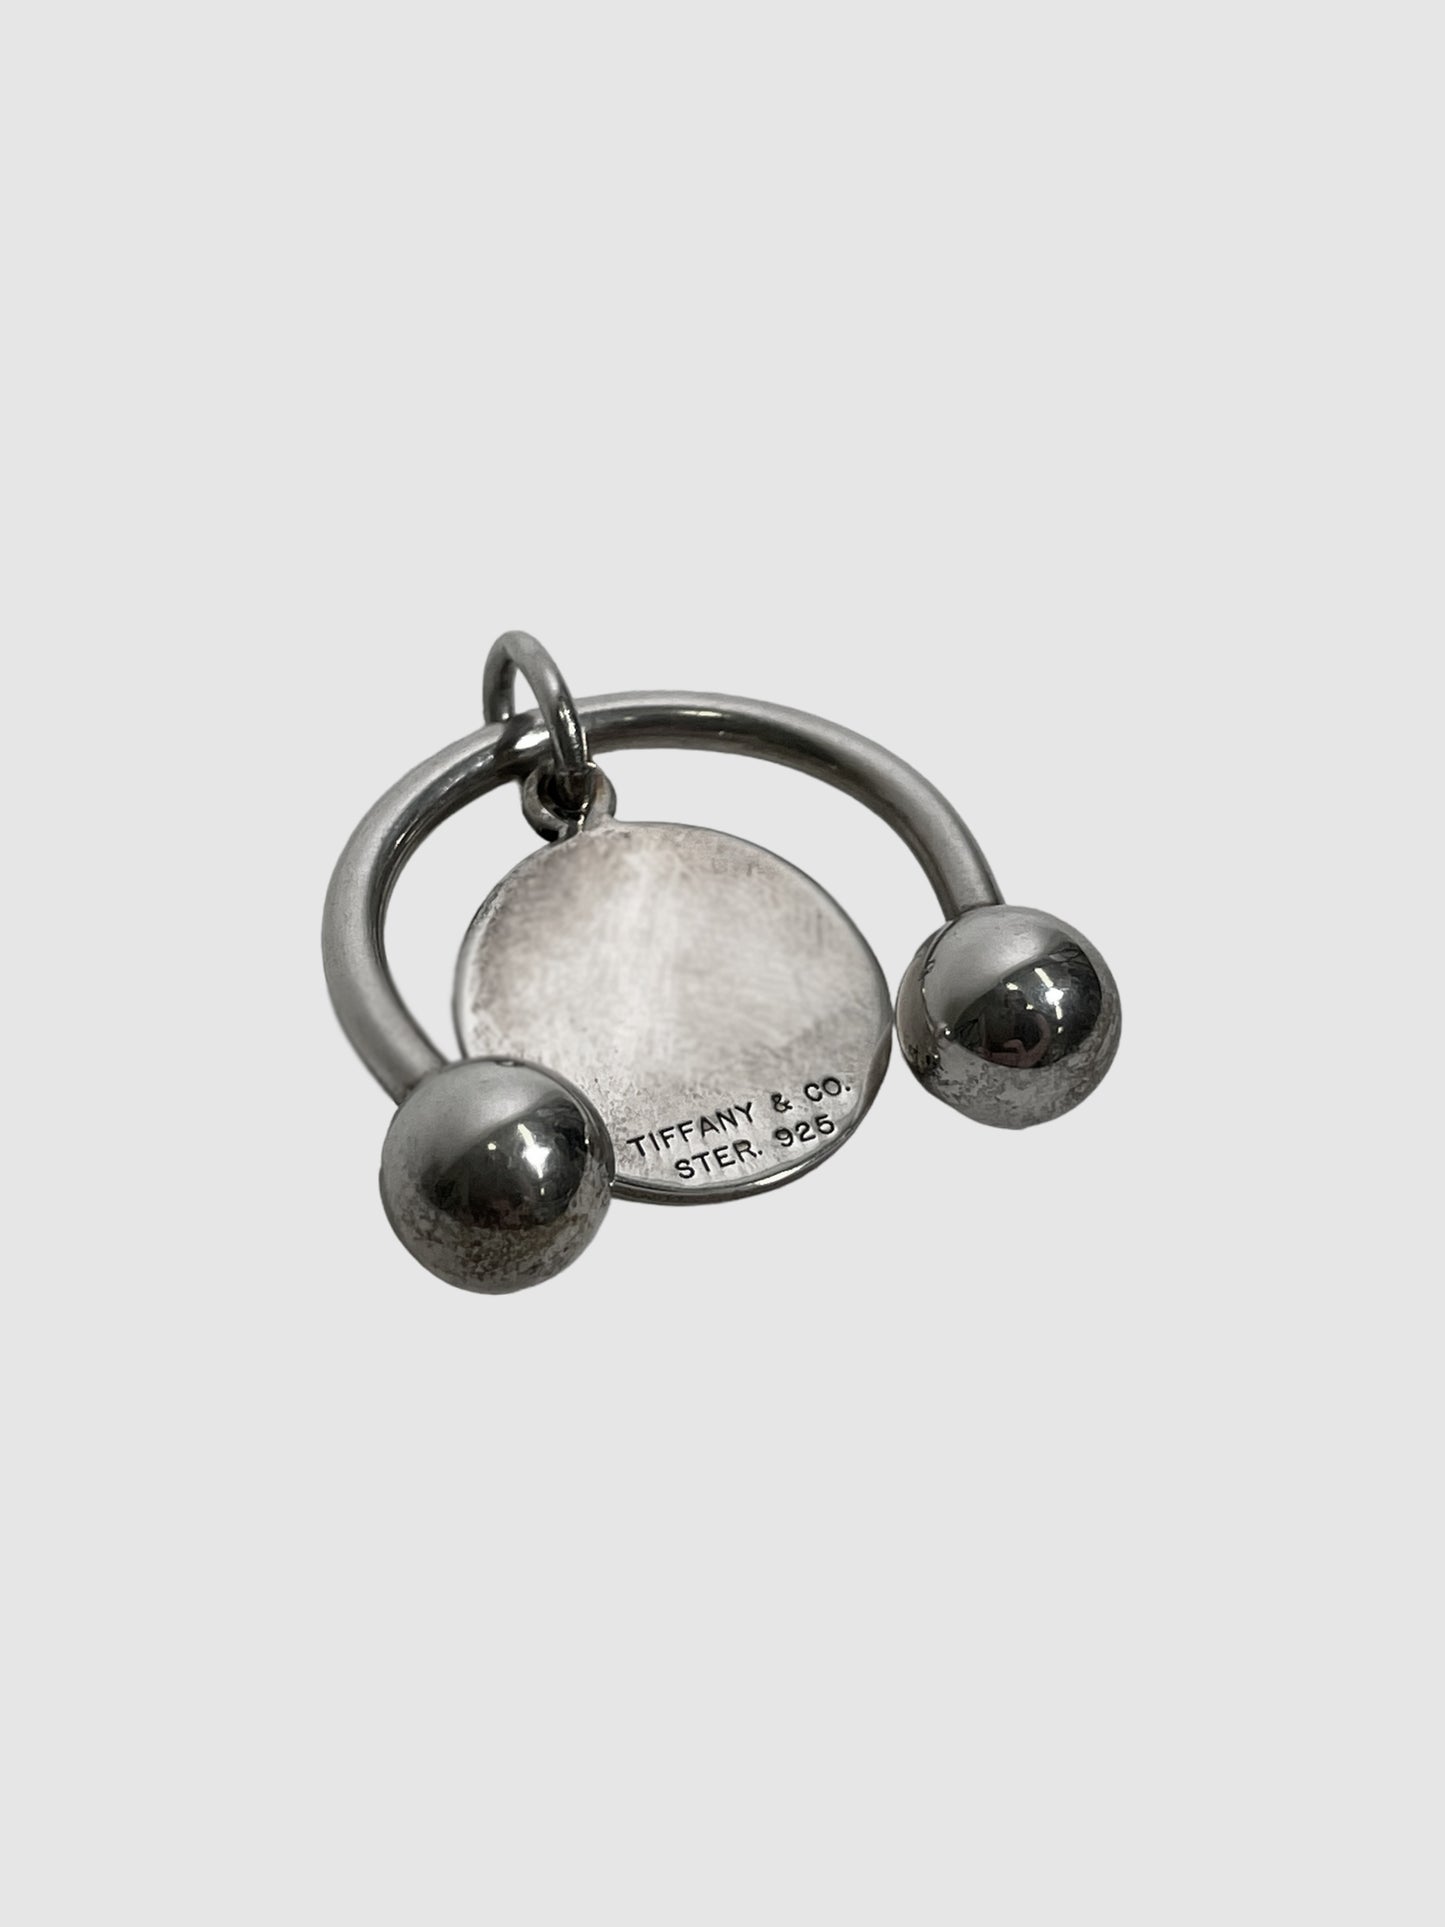 Tiffany & Co. Horseshoe Clasp Pendant Keychain